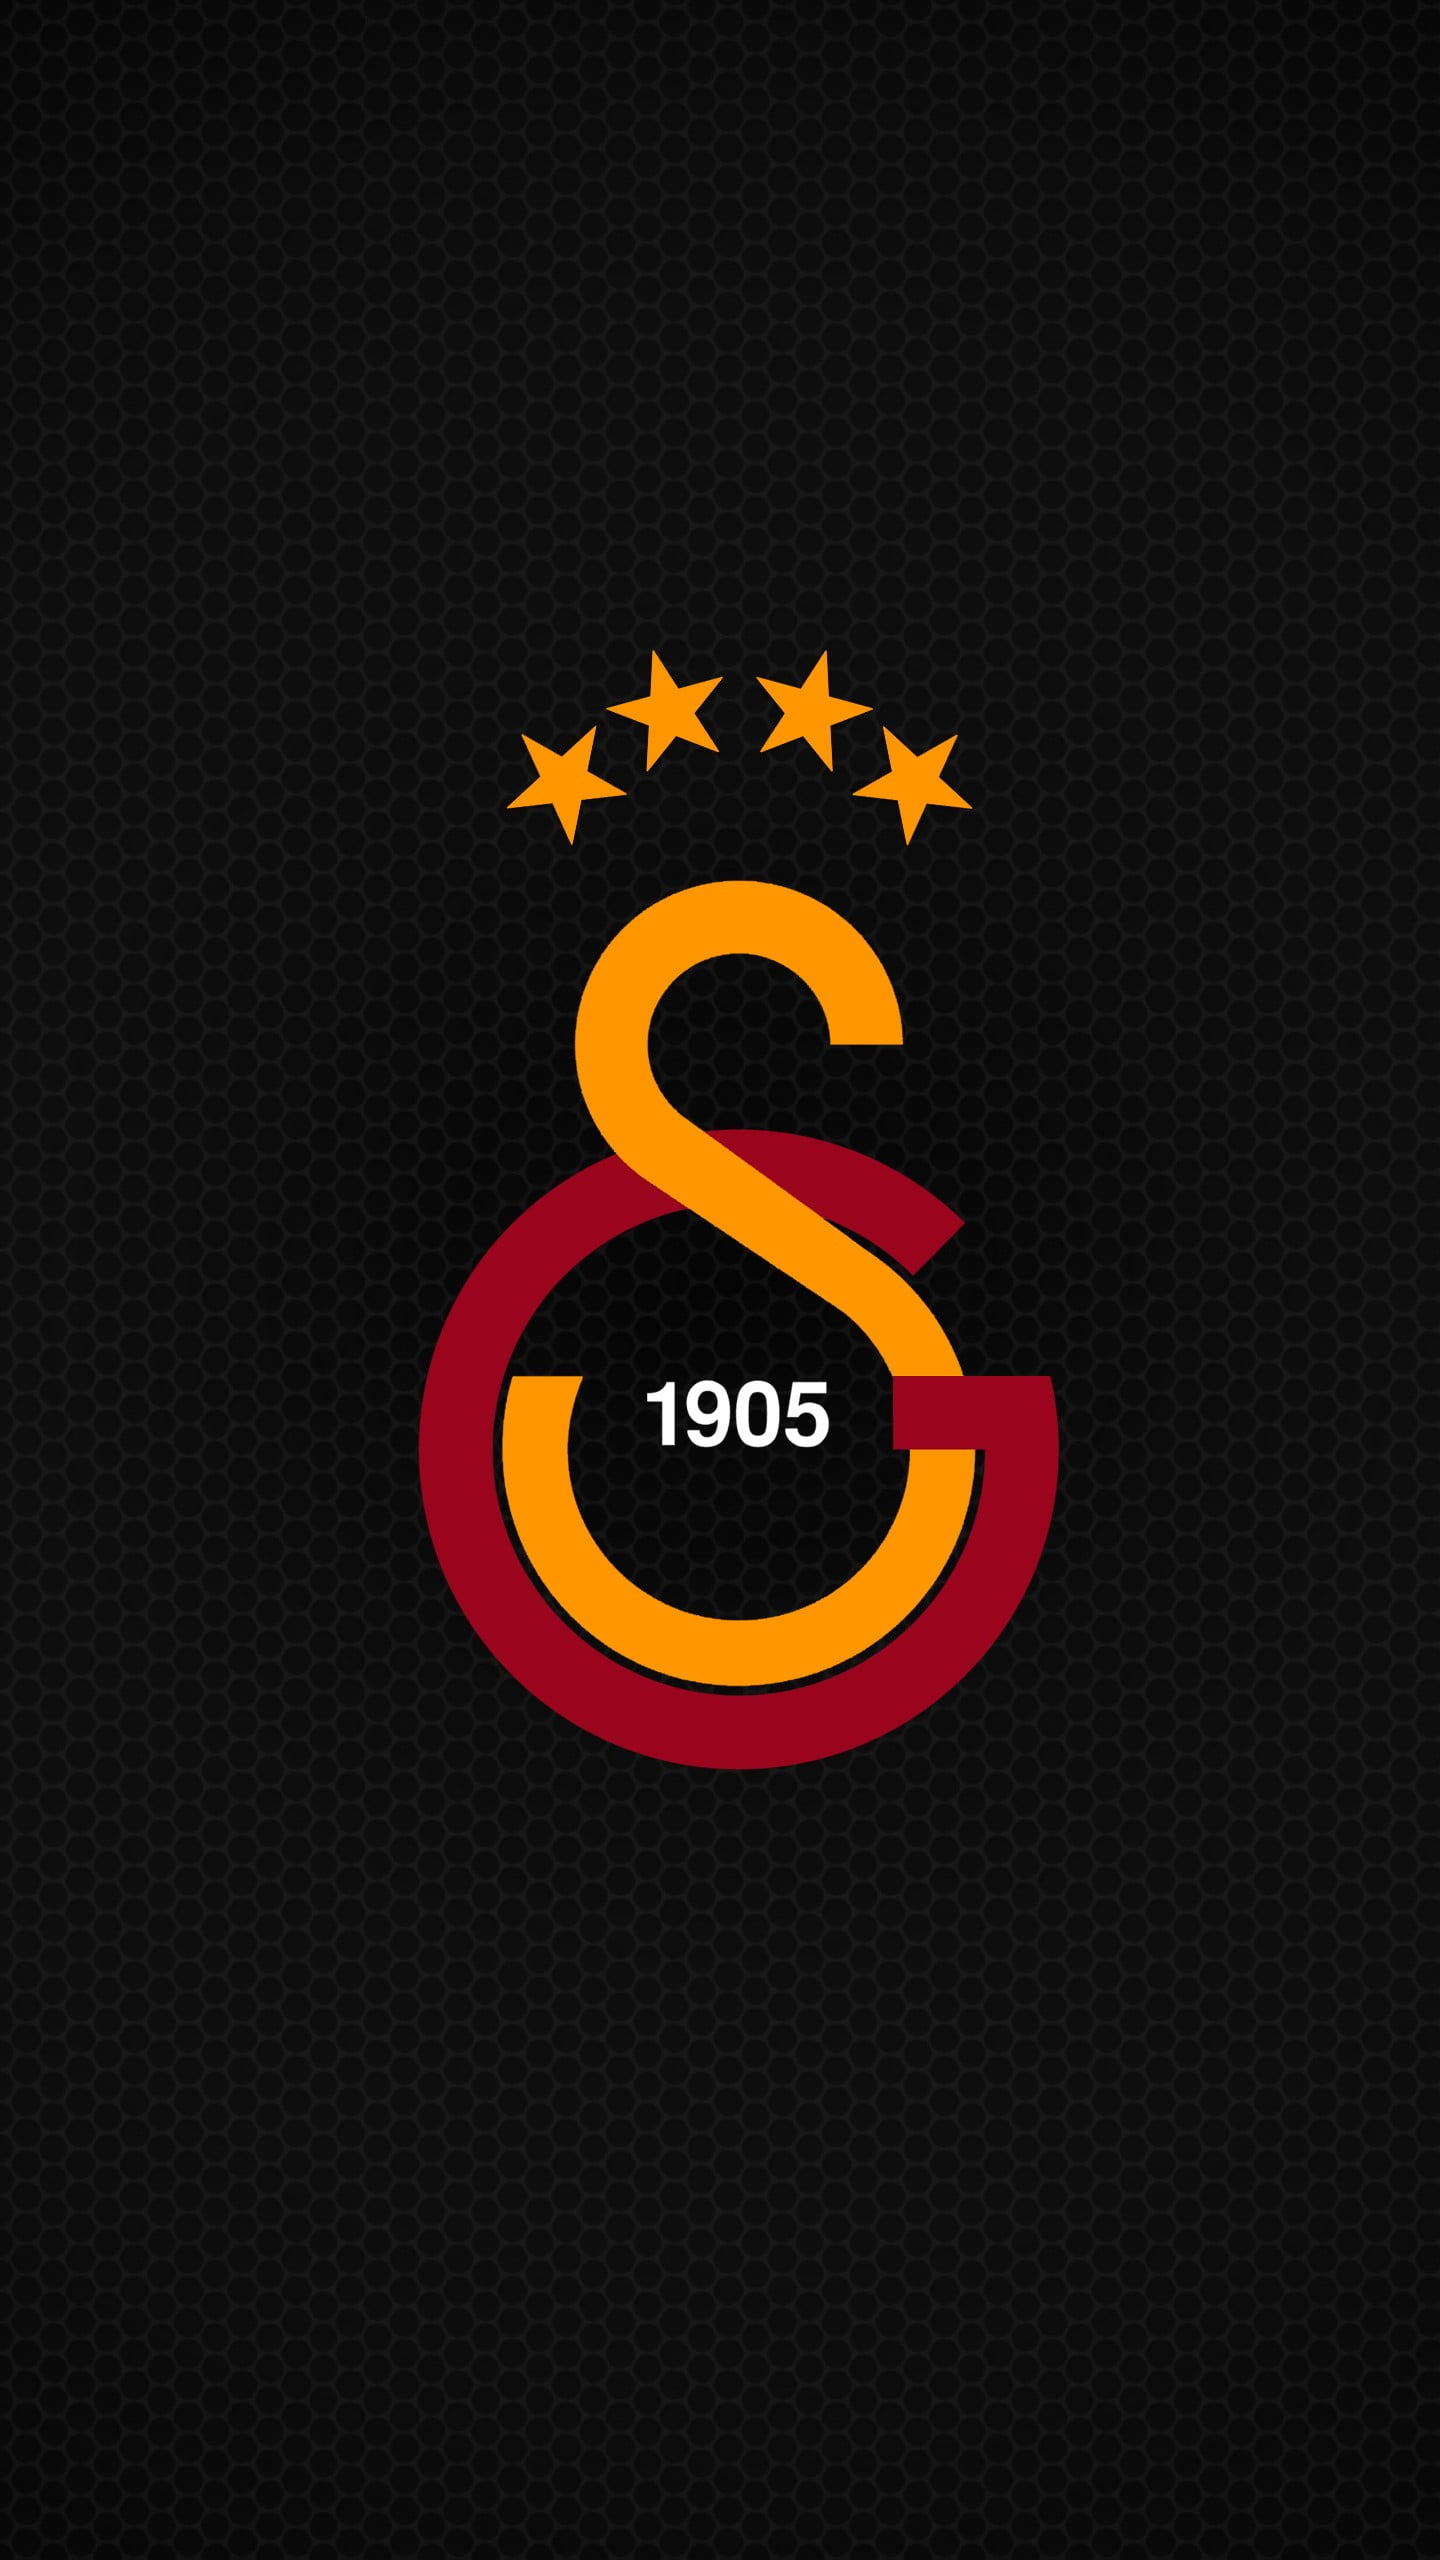 1905 Galatasaray logo, Galatasaray S.K., soccer